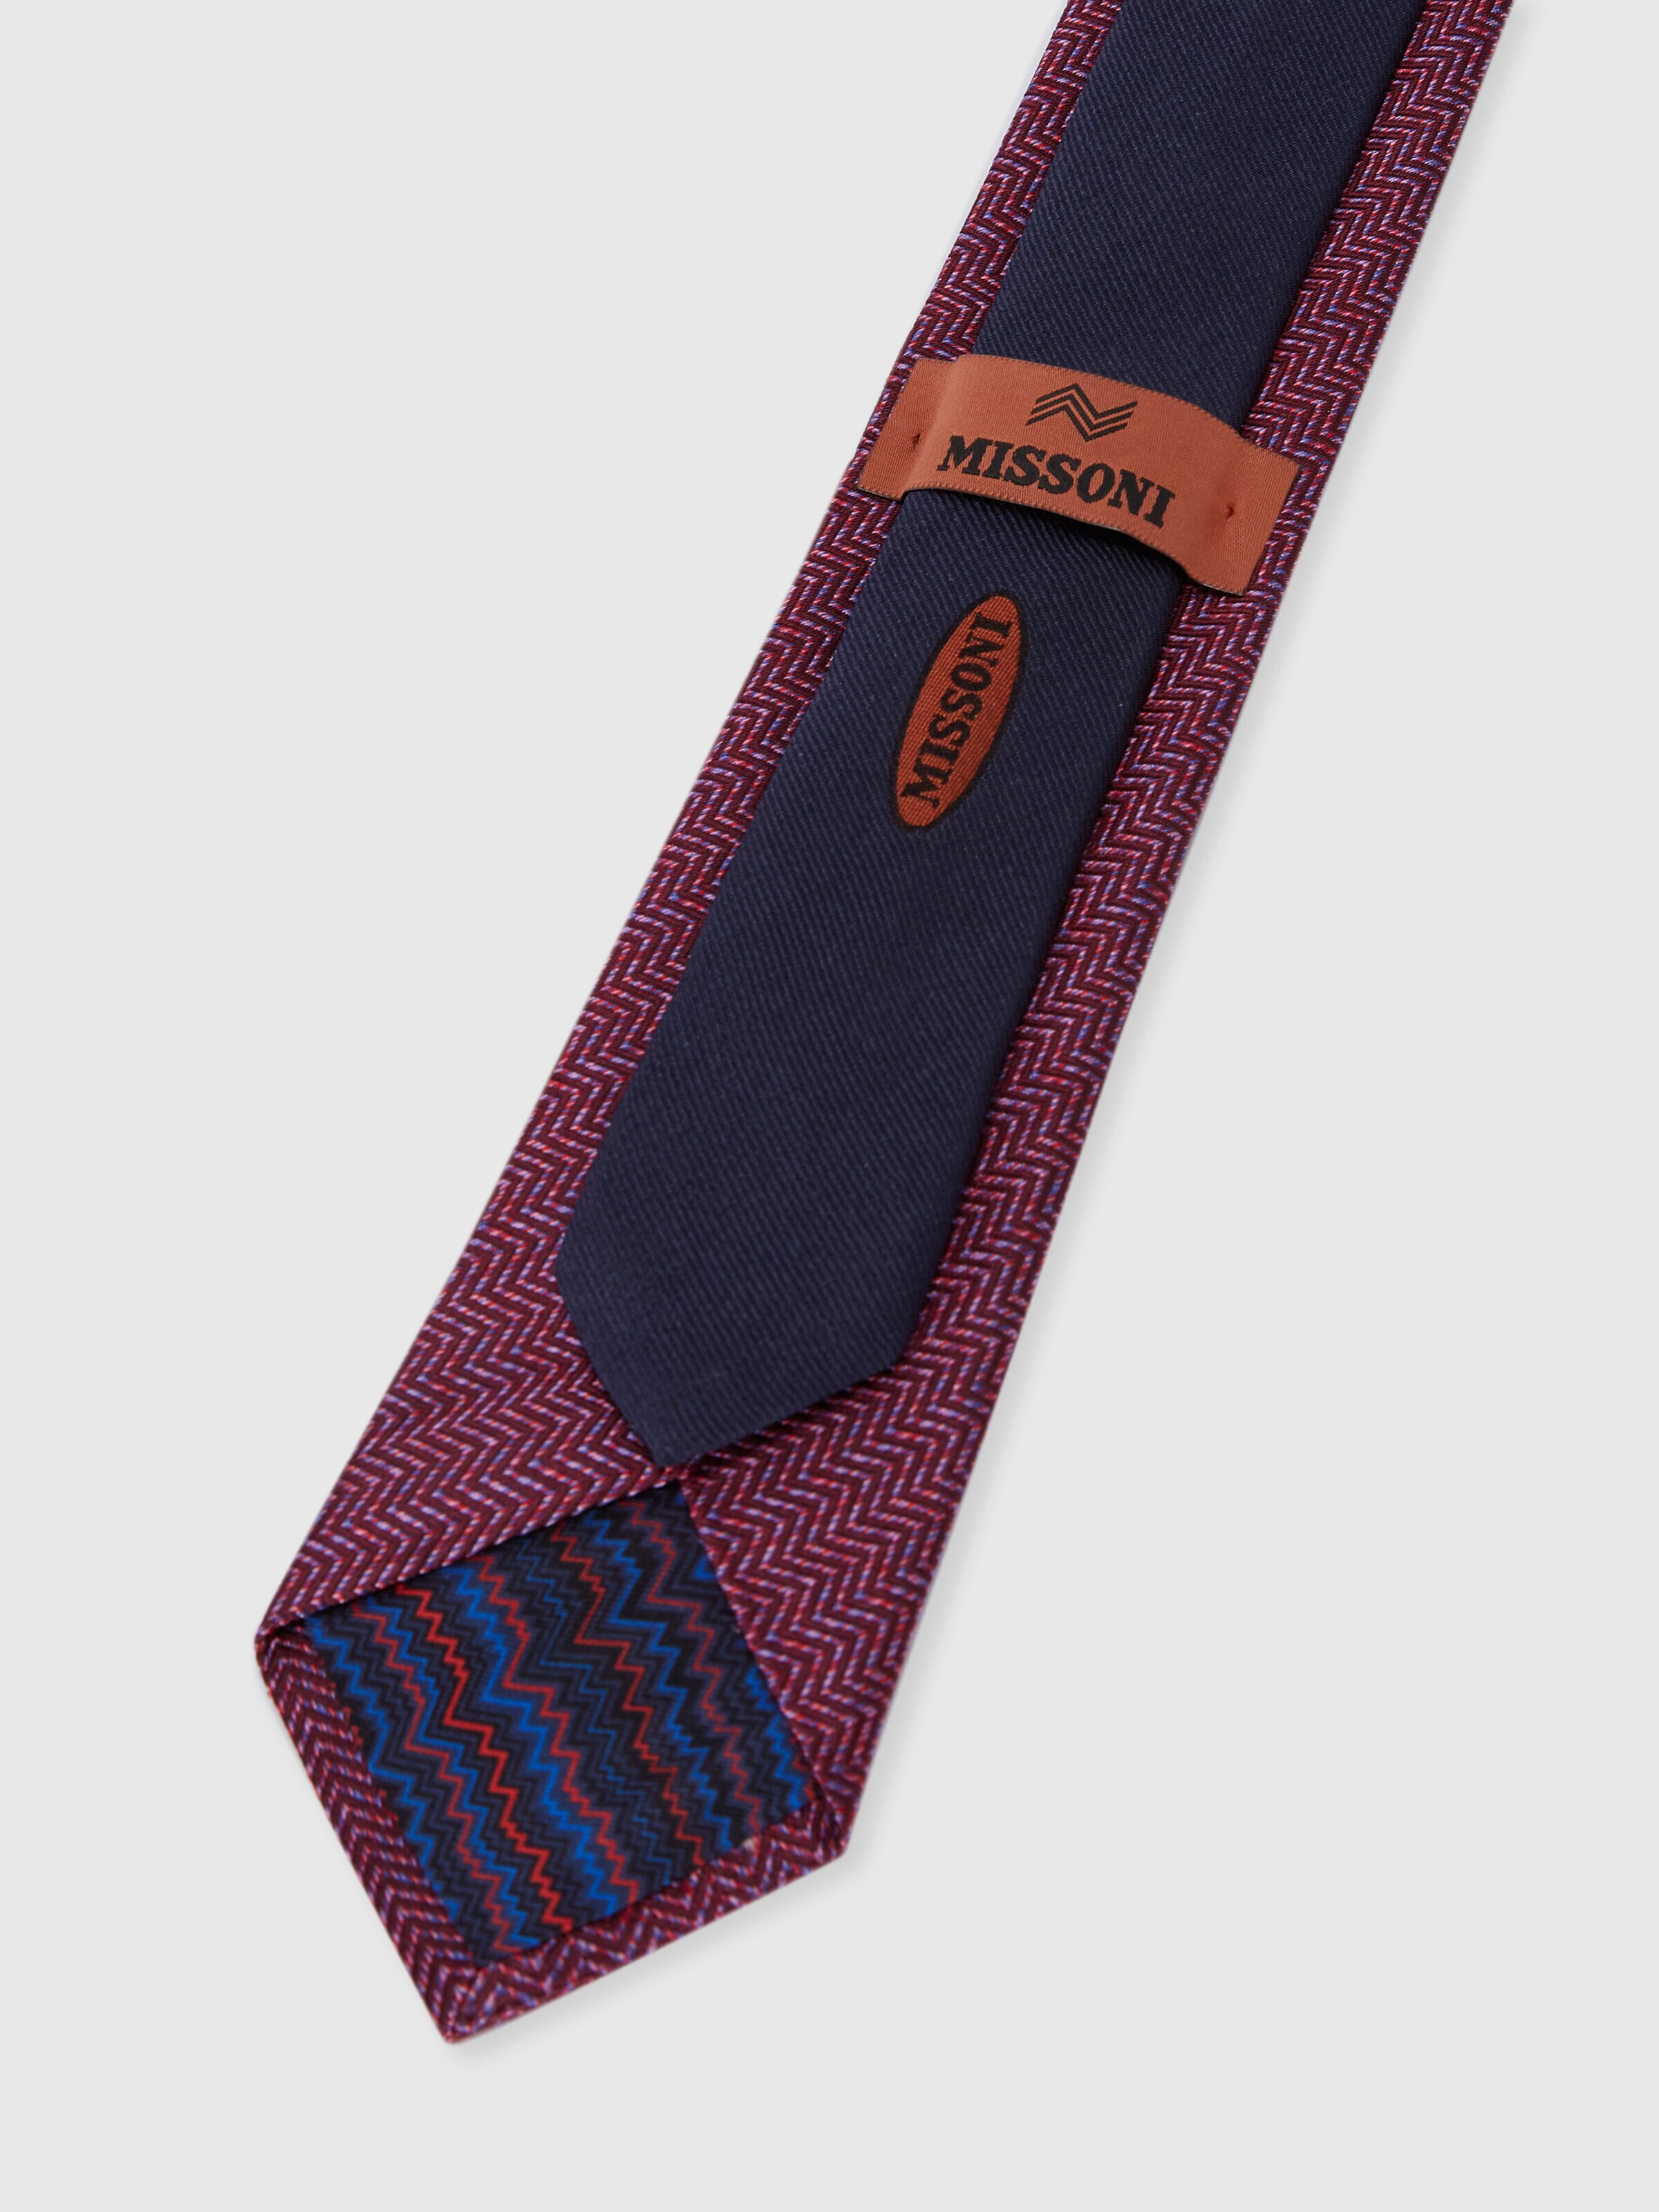 Cravatta in seta chevron, Multicolore  - 2